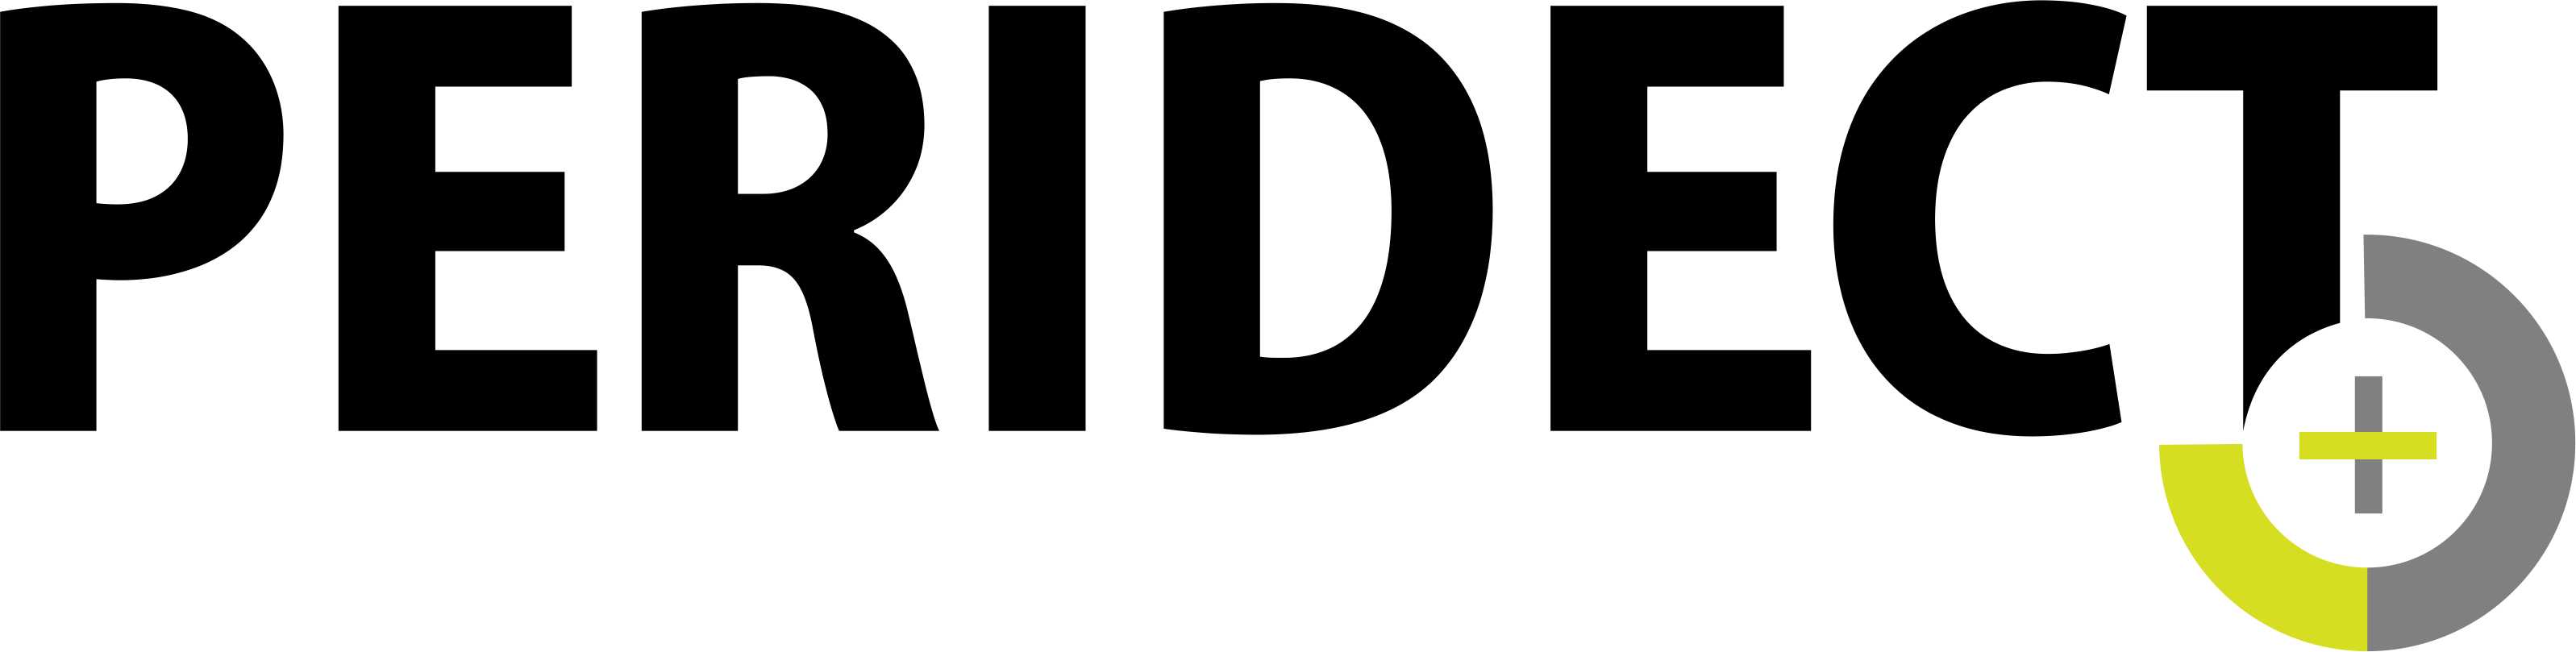 Peridect logo